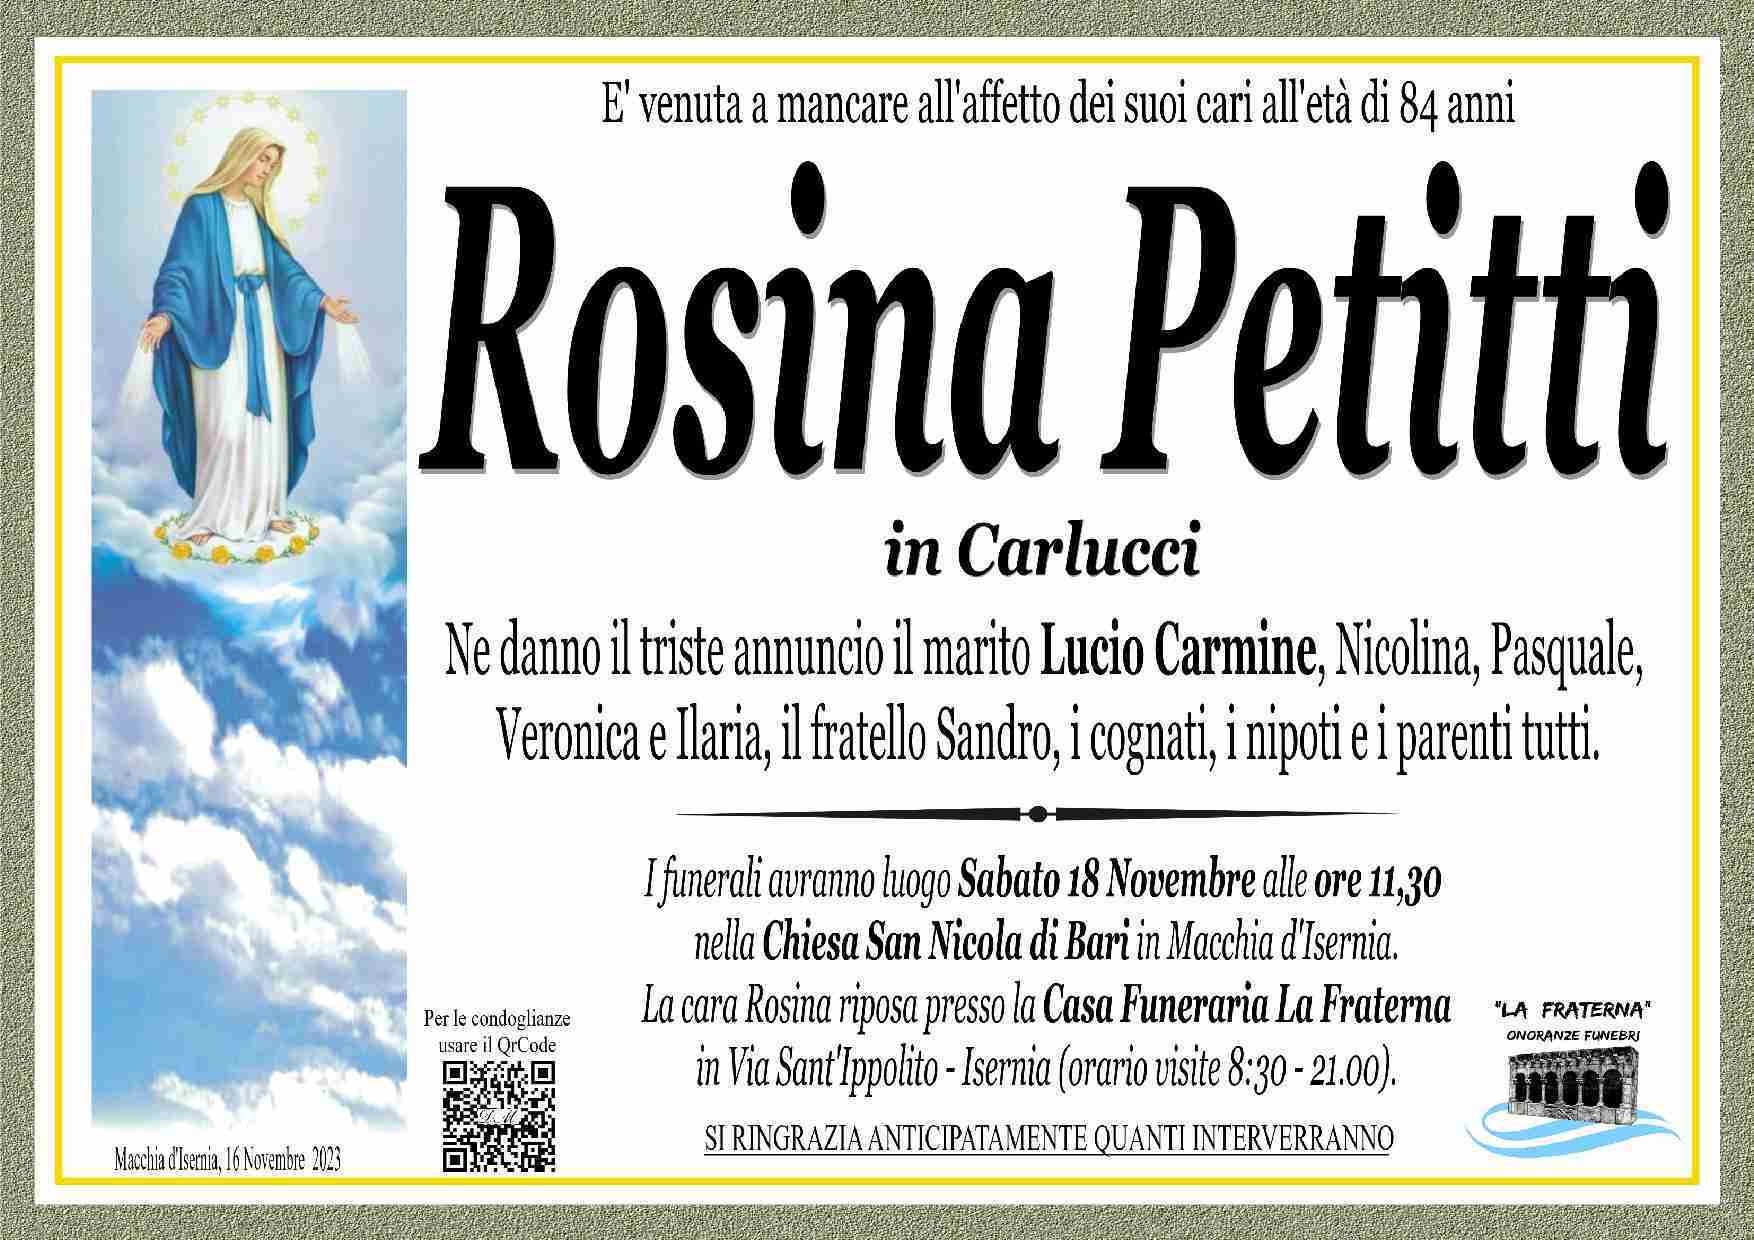 Rosina Petitti